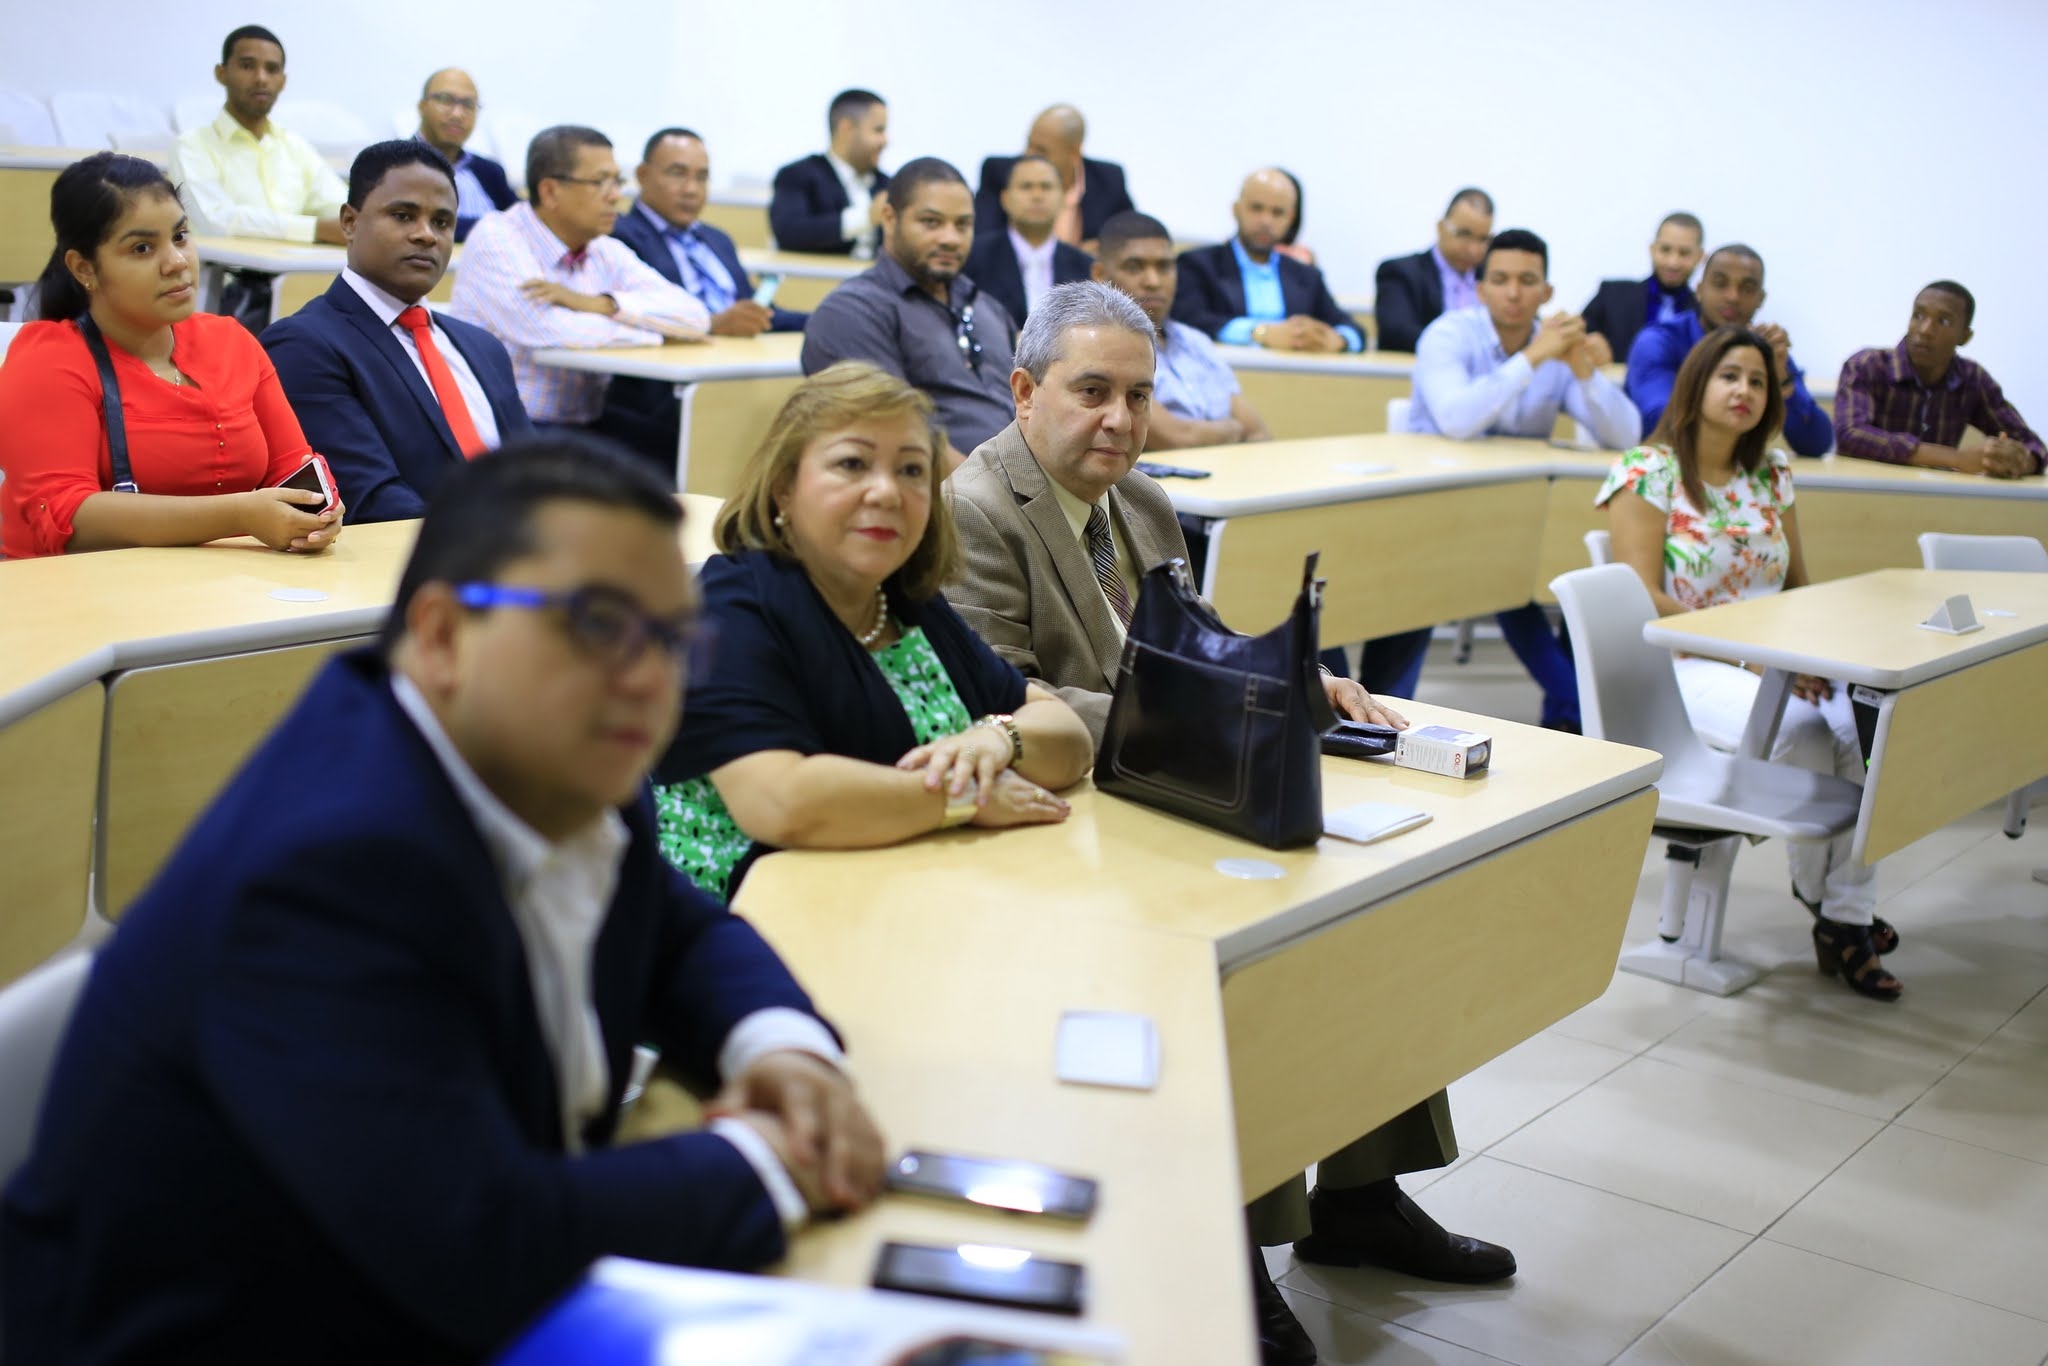 La actividad fue realizada en el Salón de Conferencias, ubicado en el Campus I de UNAPEC